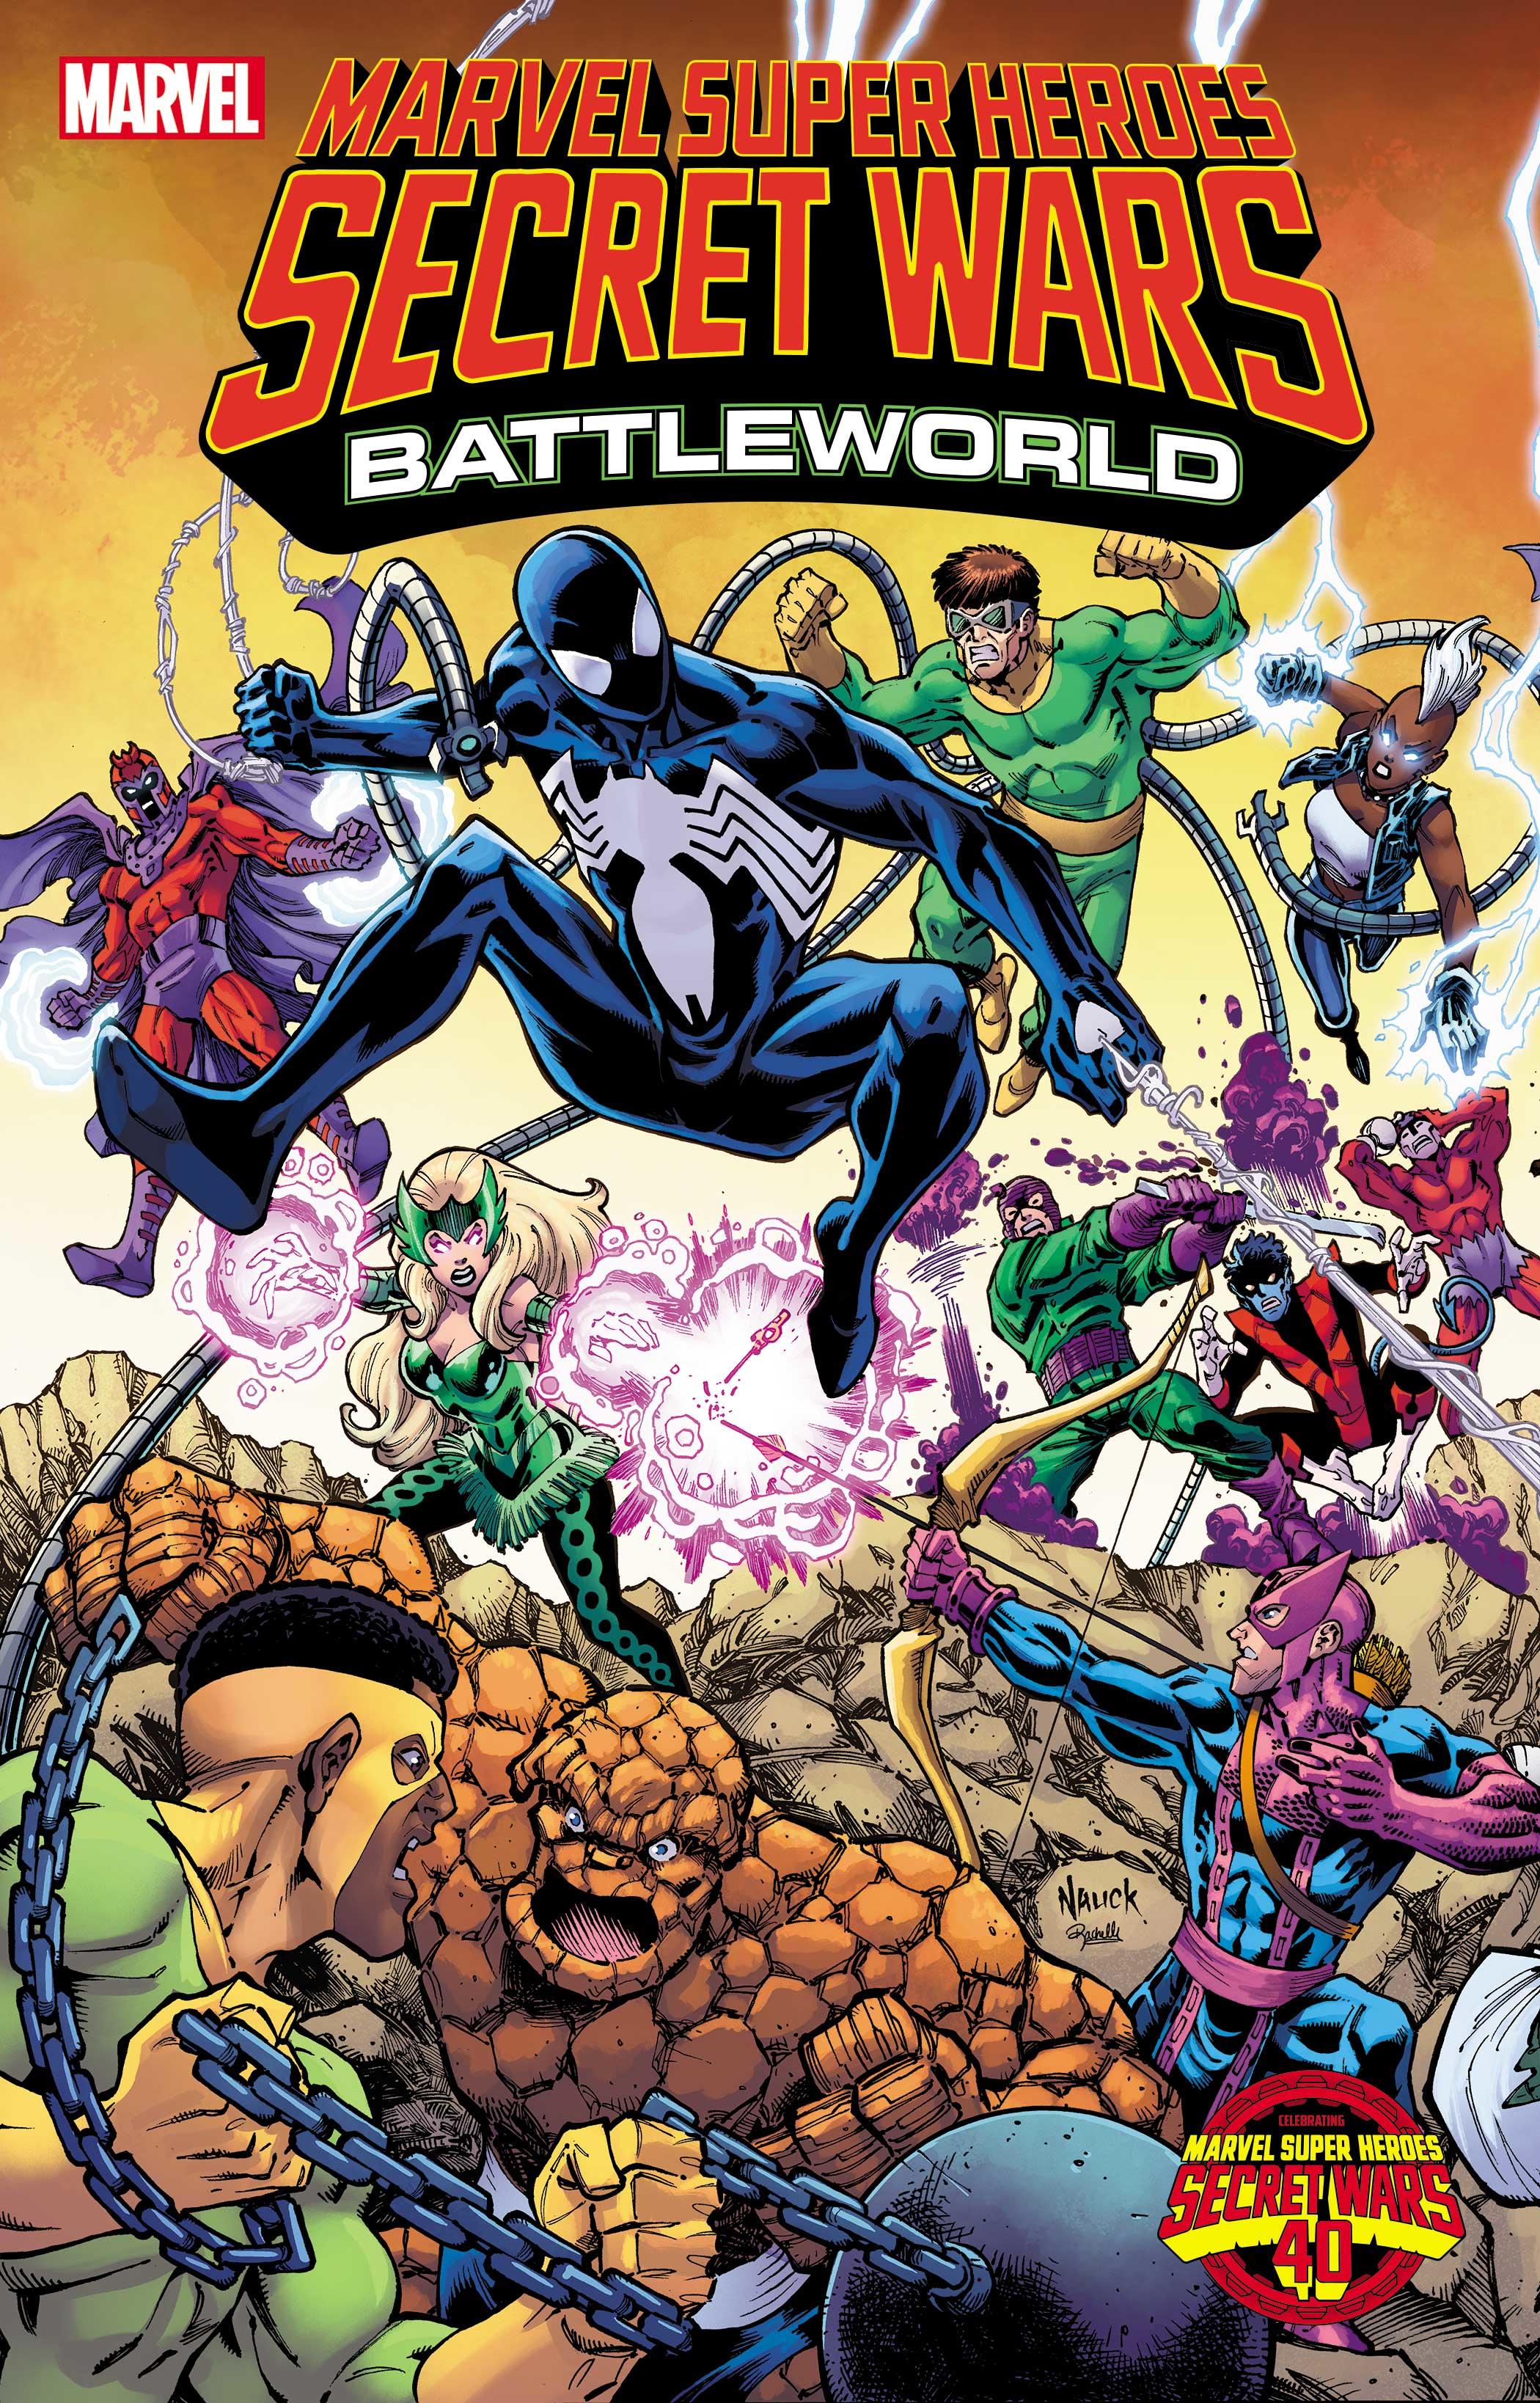 marvel-super-heroes-secret-wars-battleworld-1-todd-nauck-cconnecting-variant.jpg